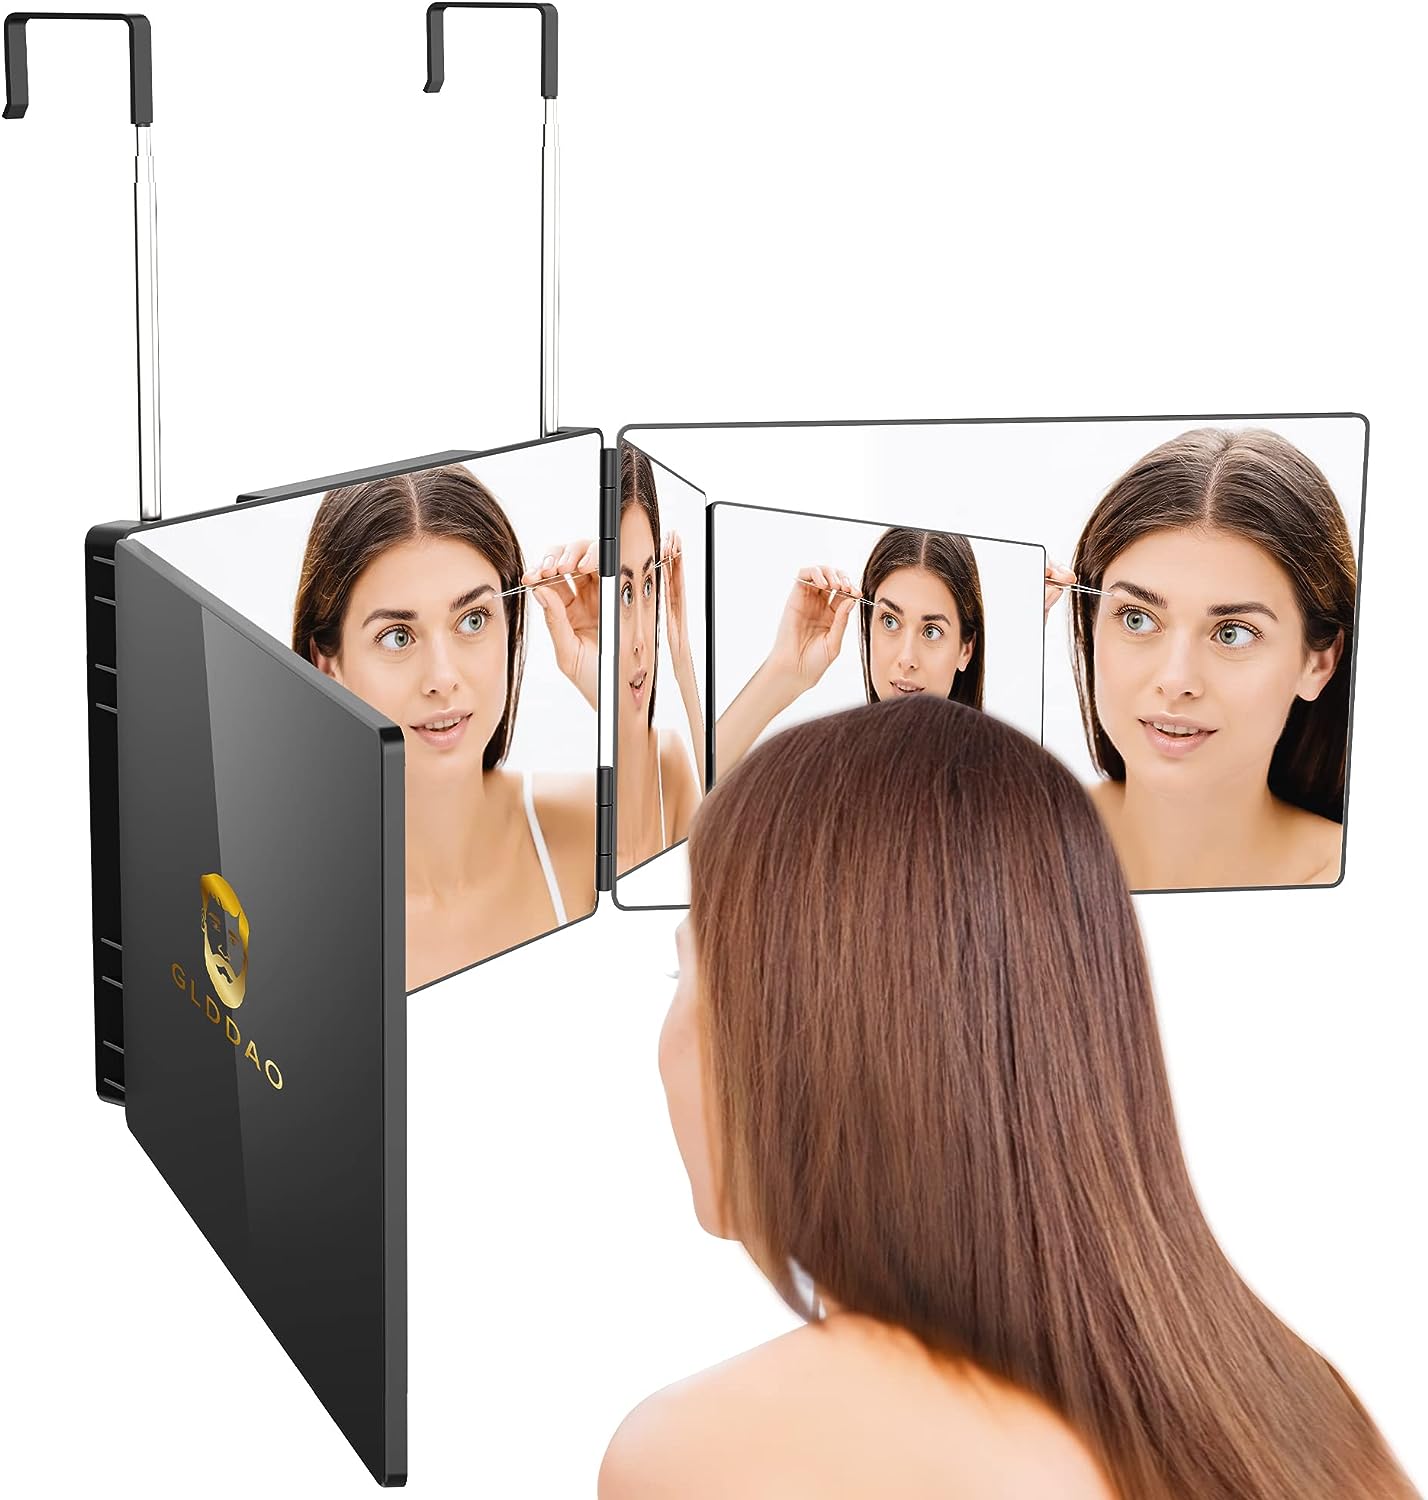 GLDDAO 3 Way Mirror for Self Hair Cutting